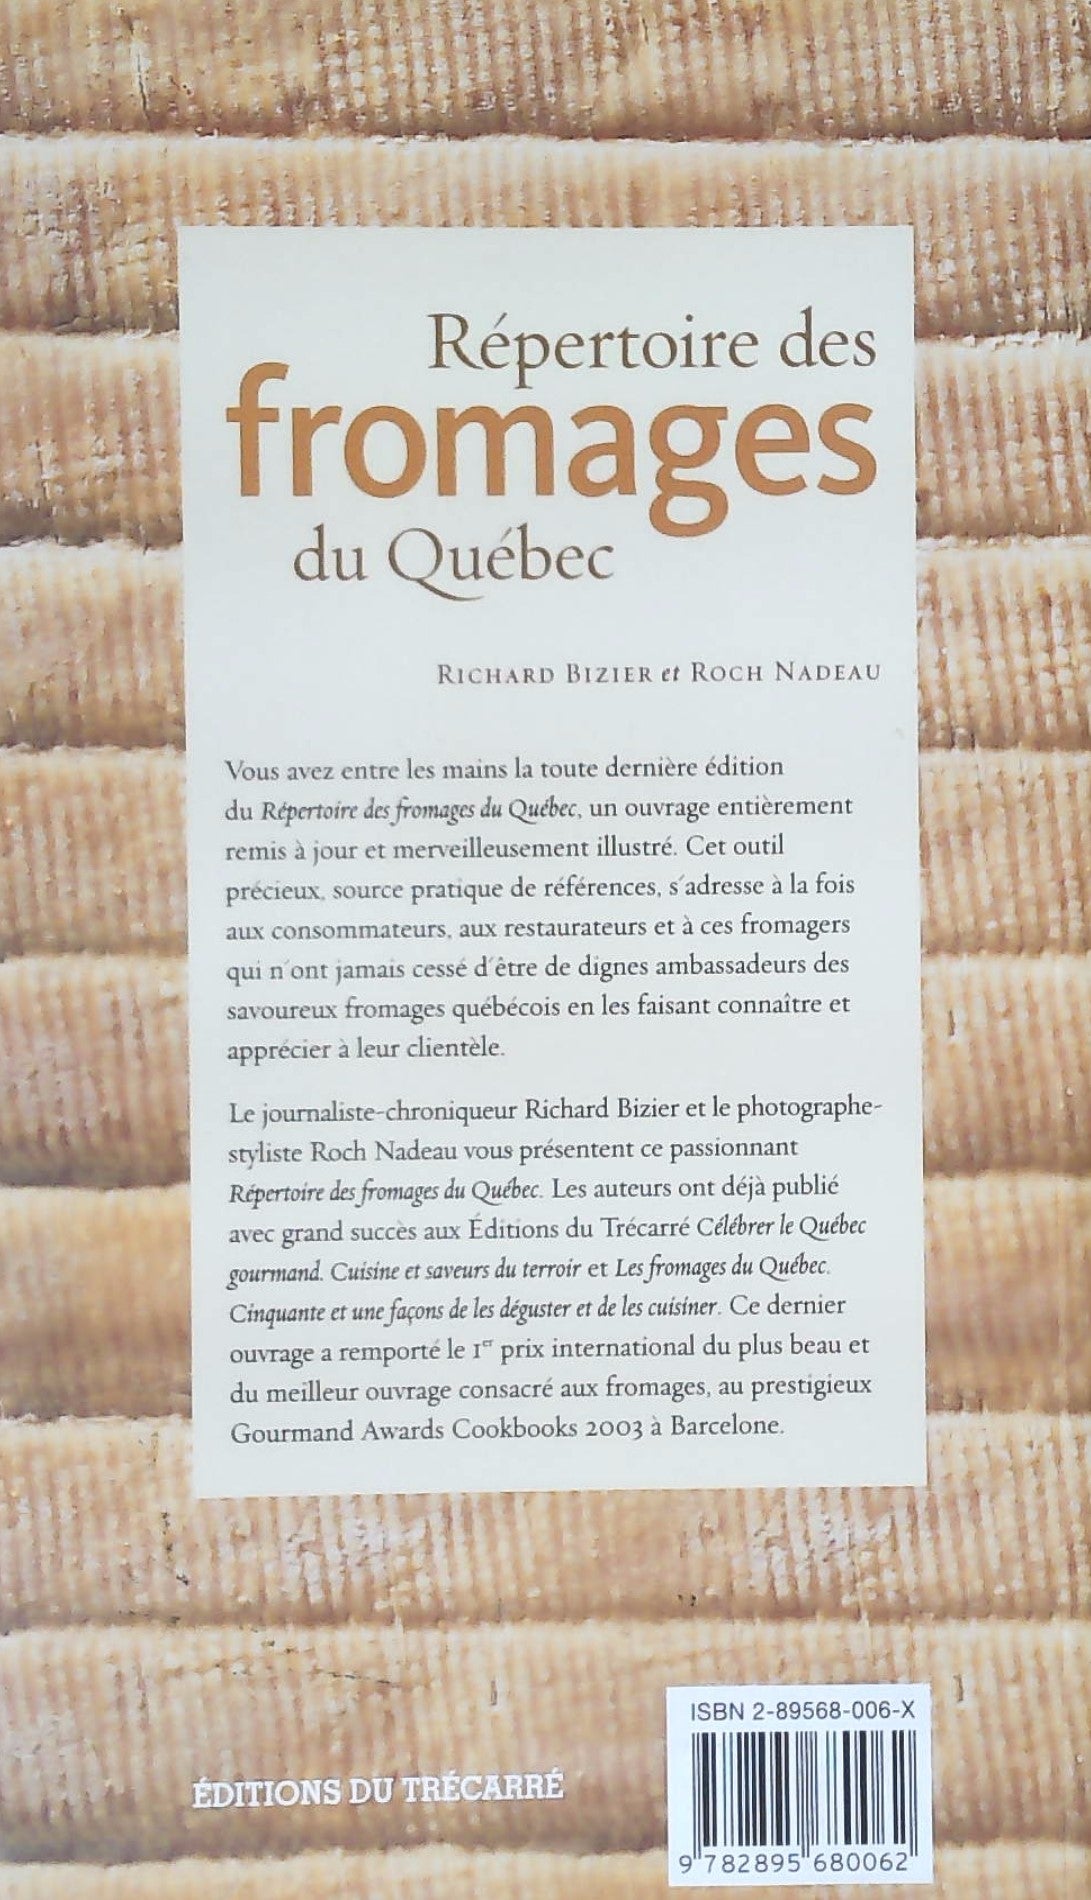 Répertoire des fromages du Québec (Richard Bizier)